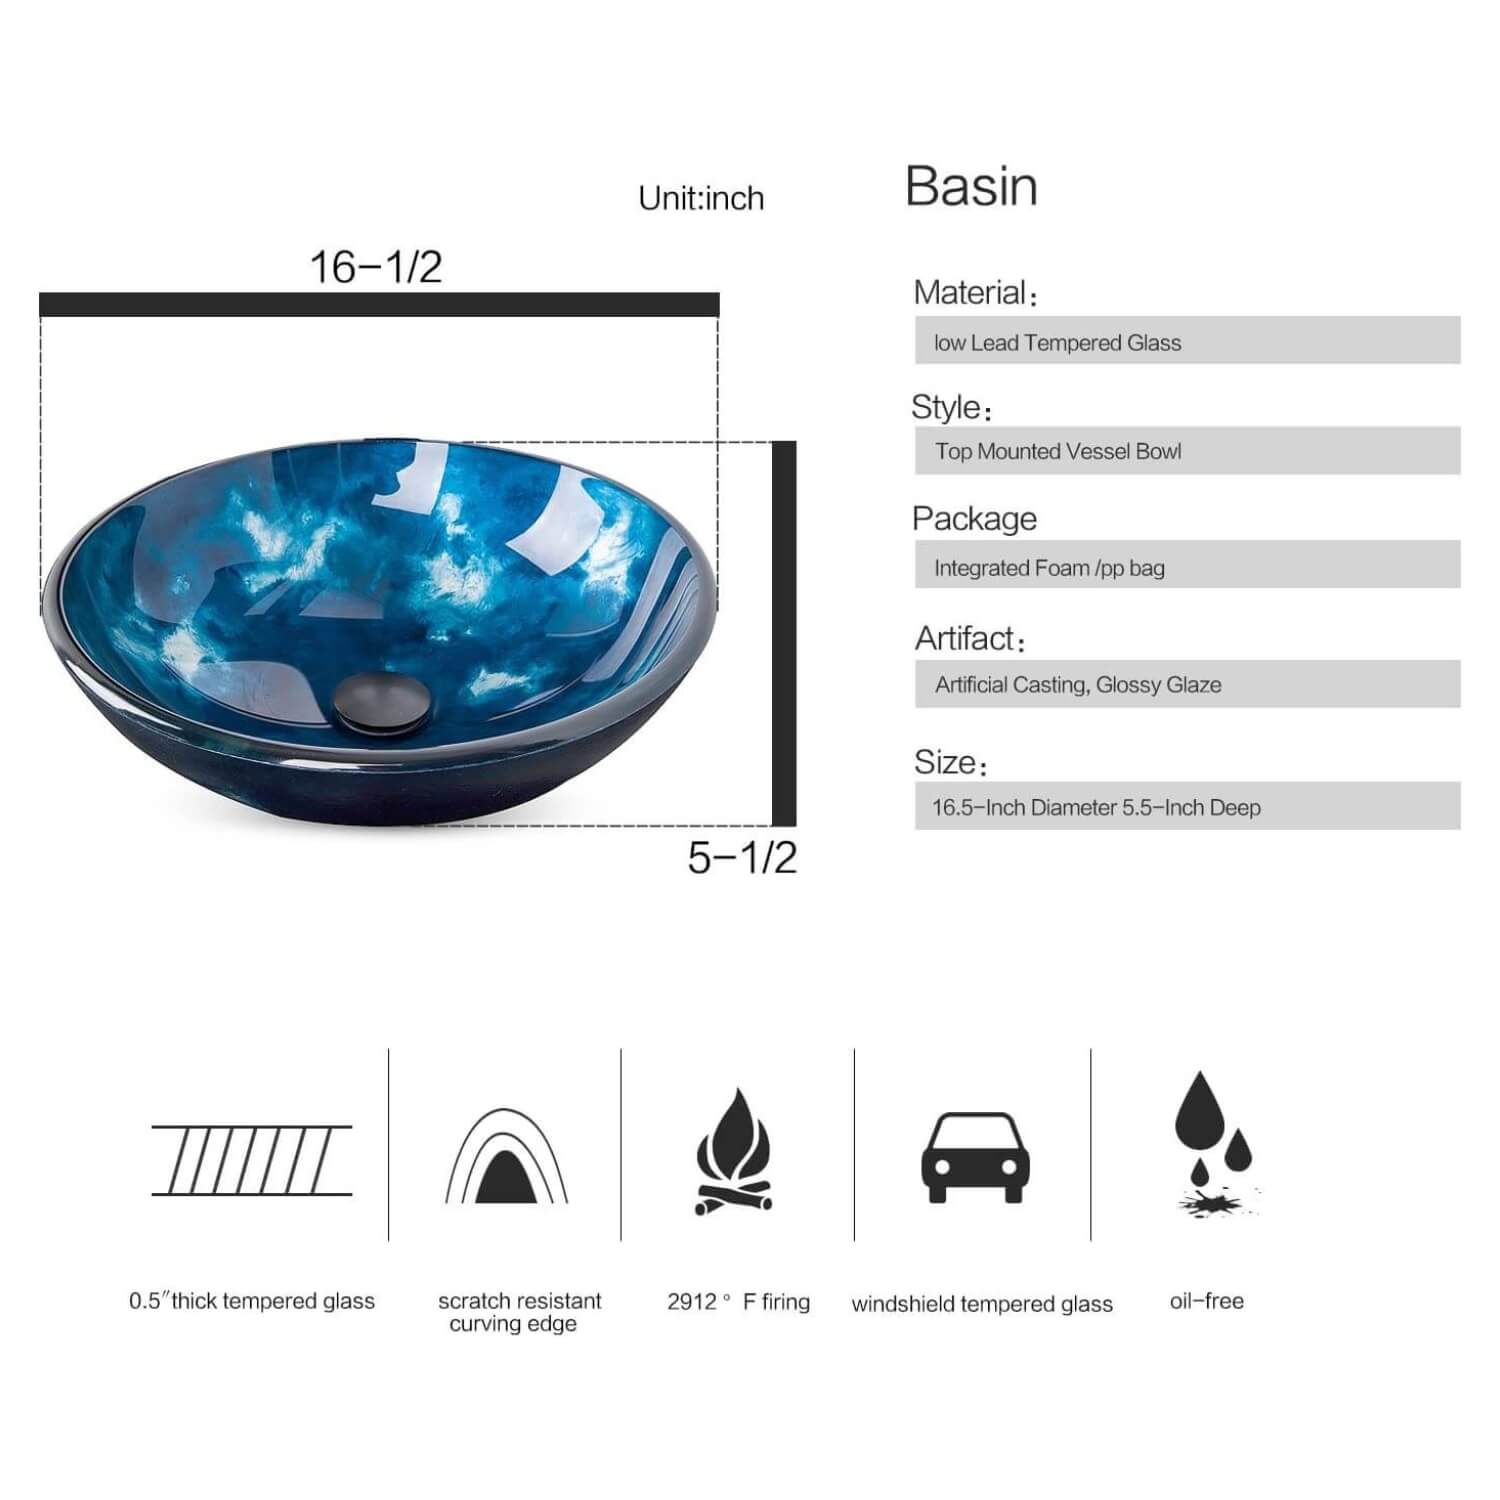 Description of blue glass sink